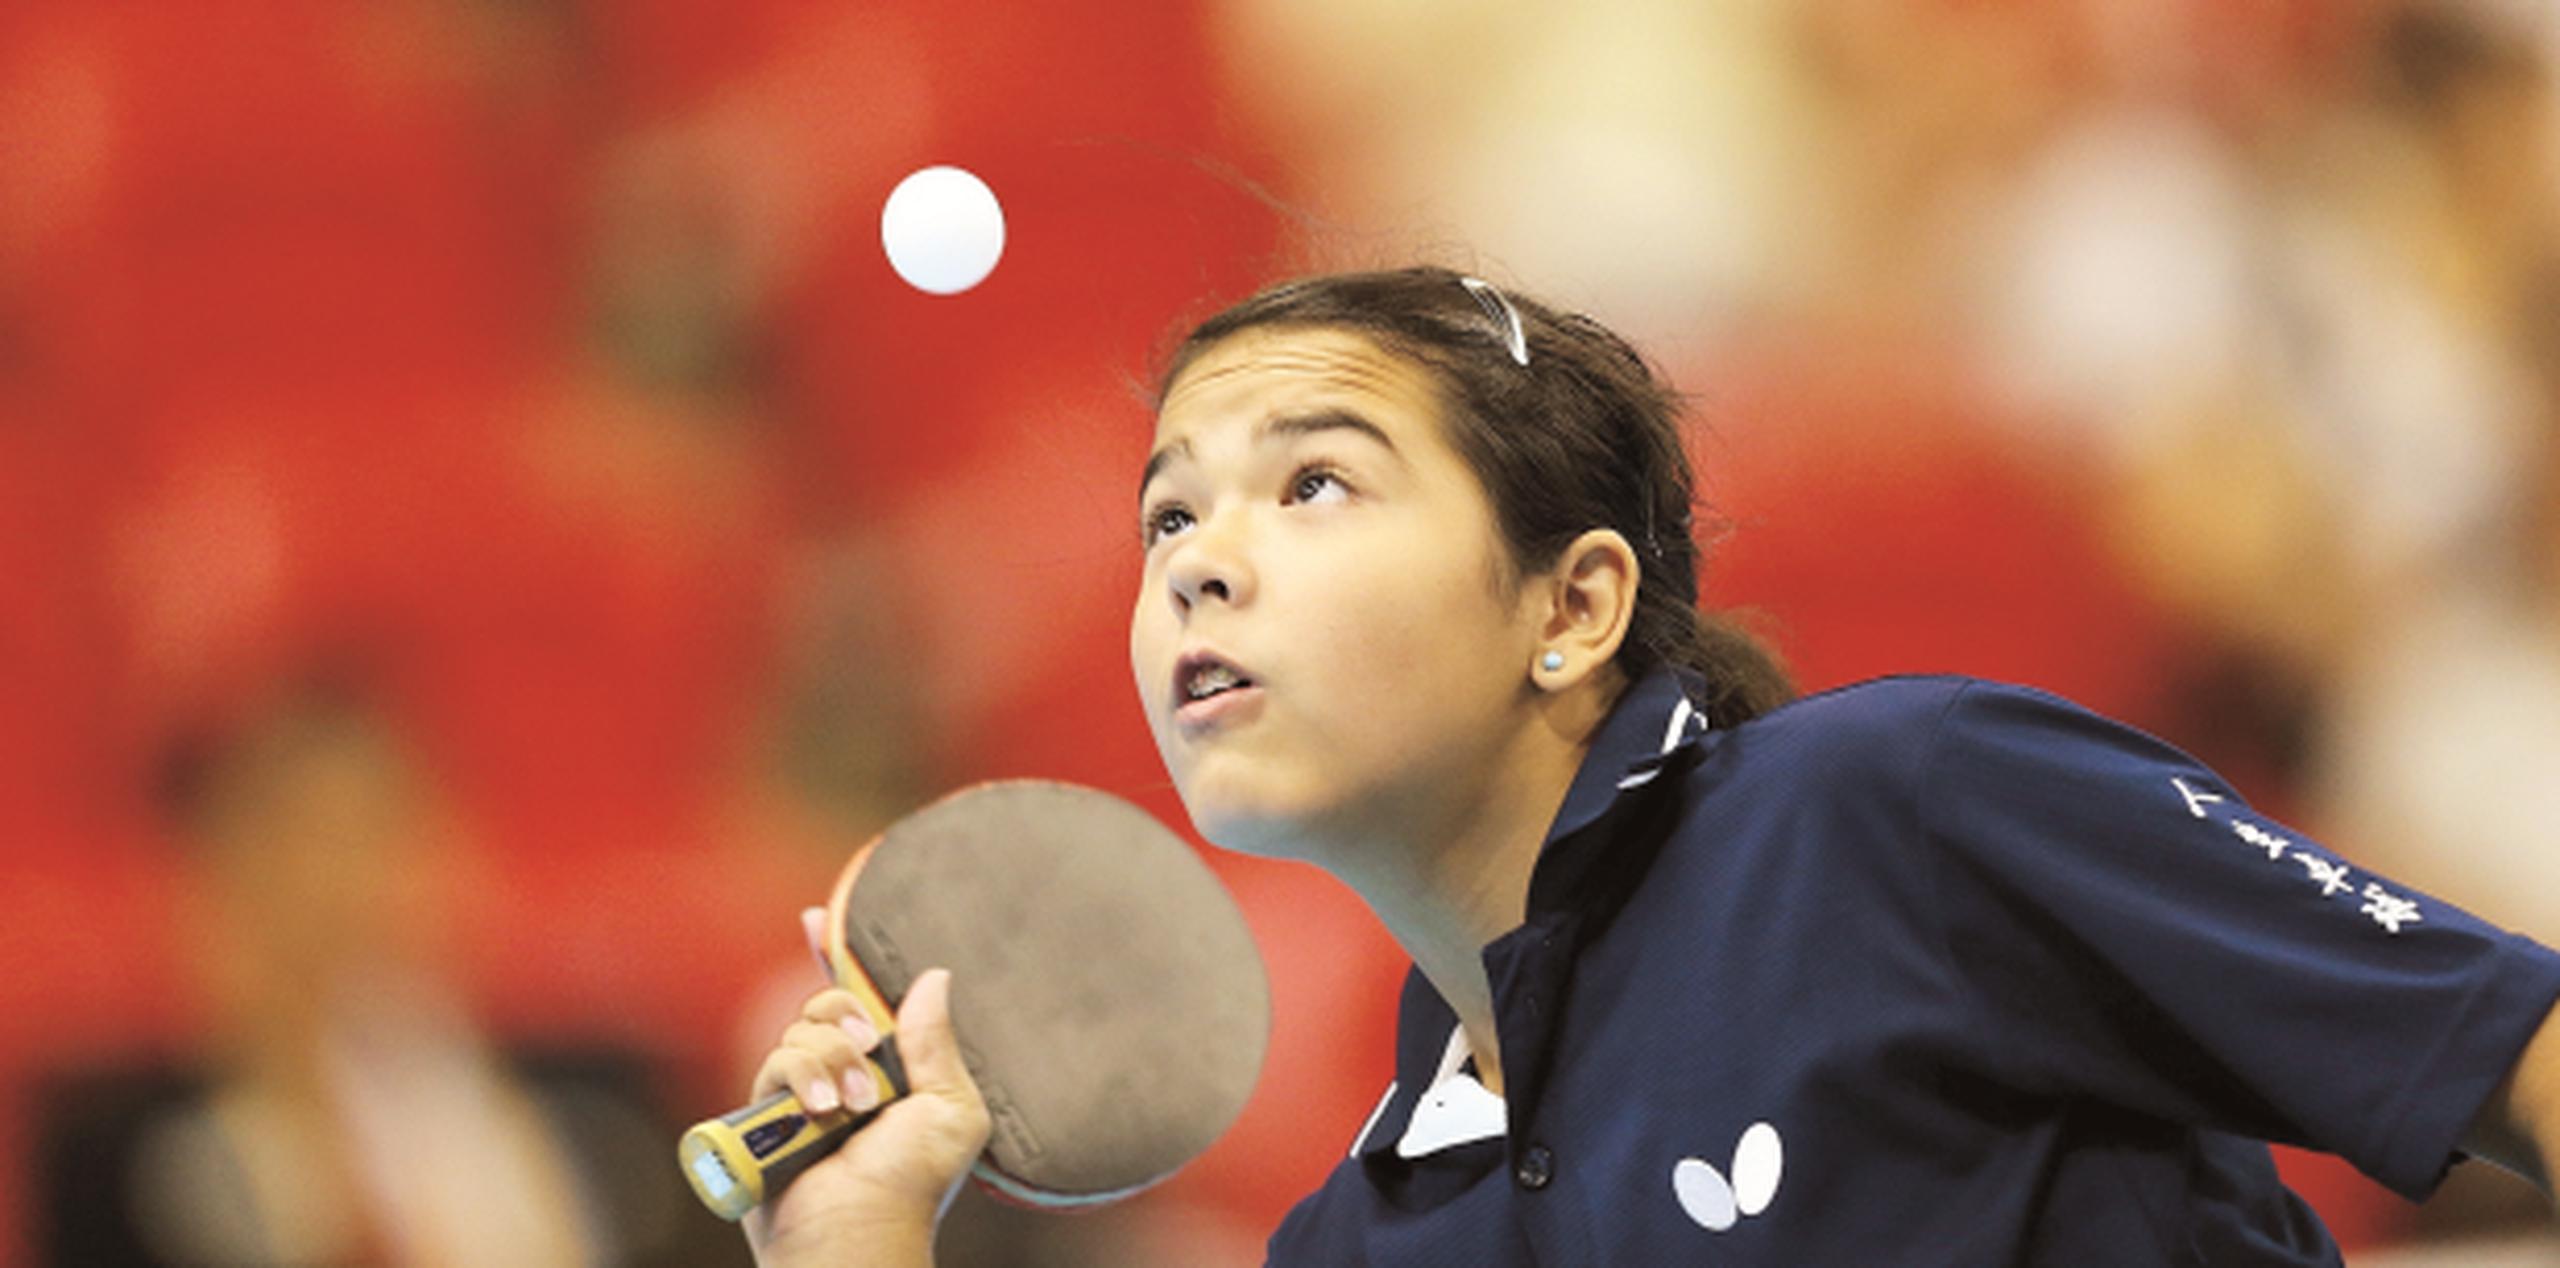 Adriana Díaz está jugando en China en un torneo de clubes de la federación de tenis de mesa de ese país. Según expertos, los más avanzados jugadores de esa disciplina son chinos. (Archivo)